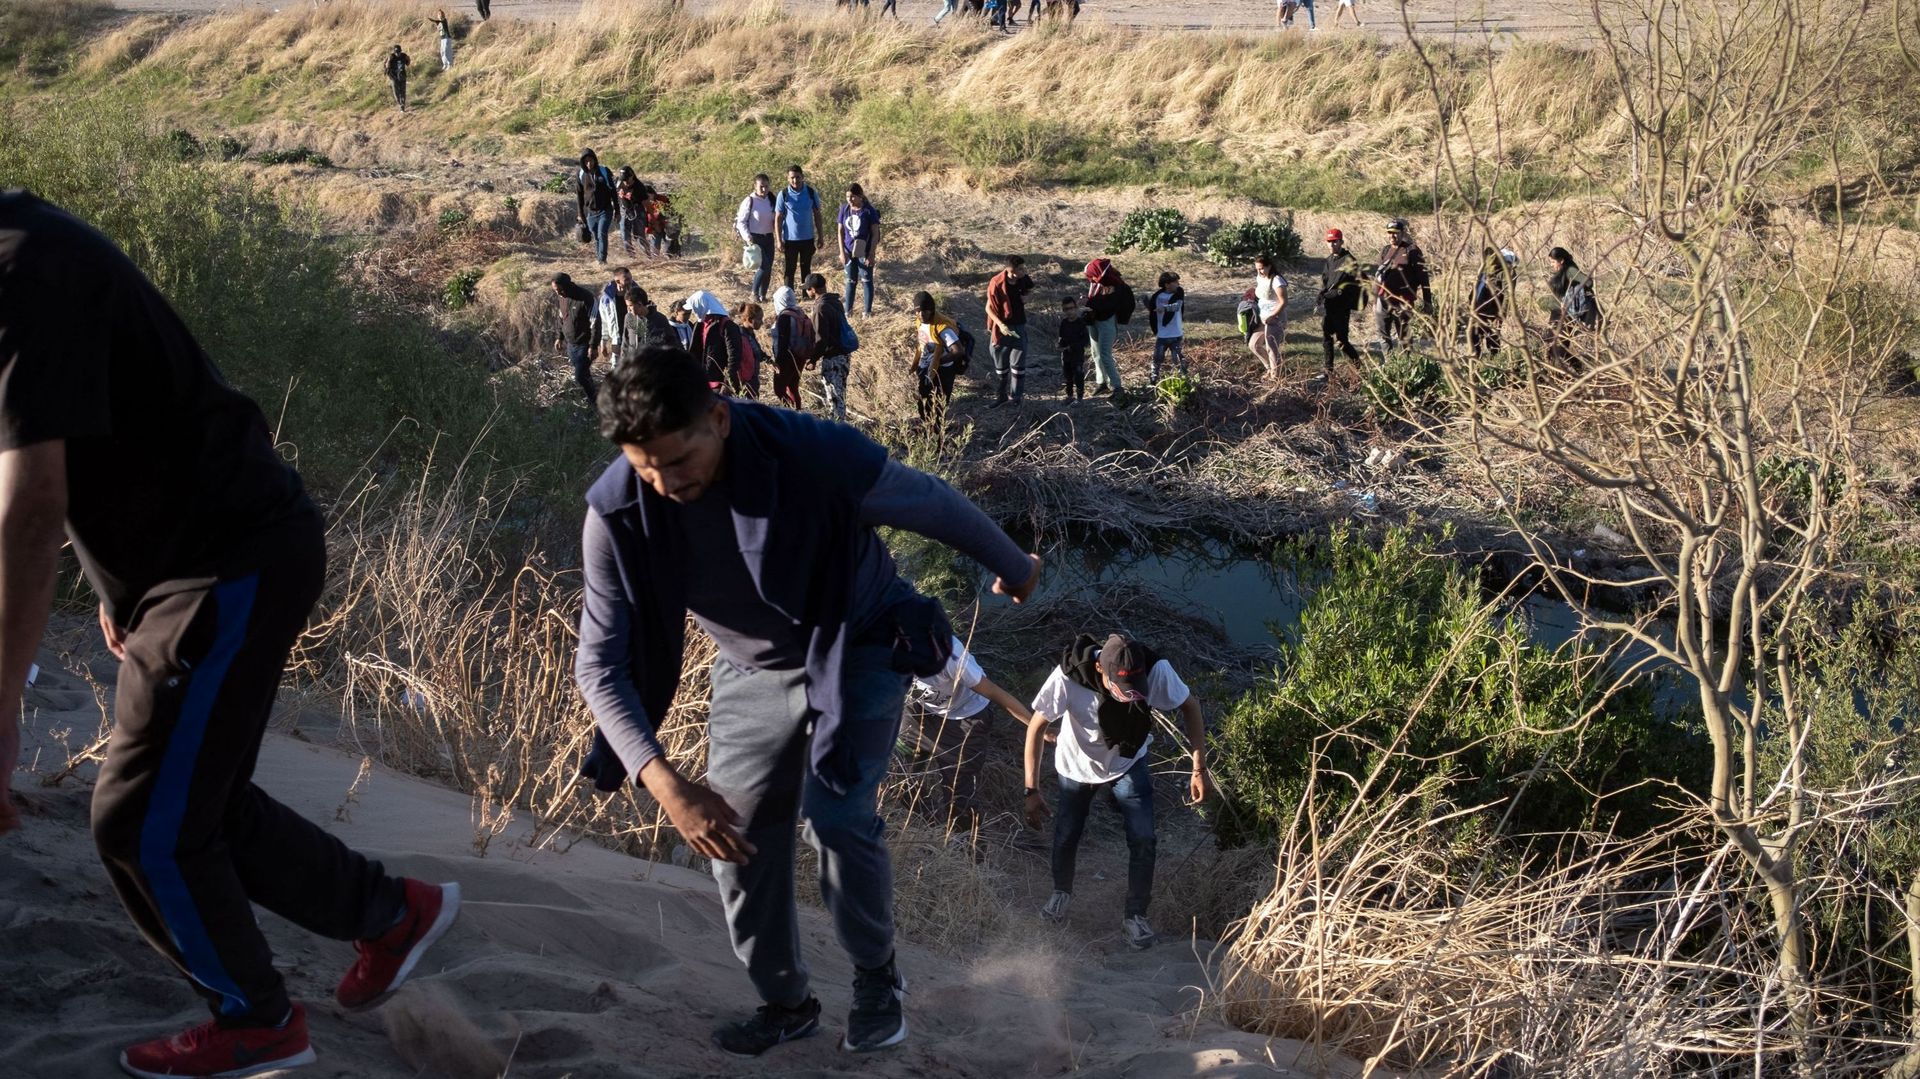 México: Más de 1.000 migrantes intentan ingresar a Estados Unidos tras tragedia de Juárez